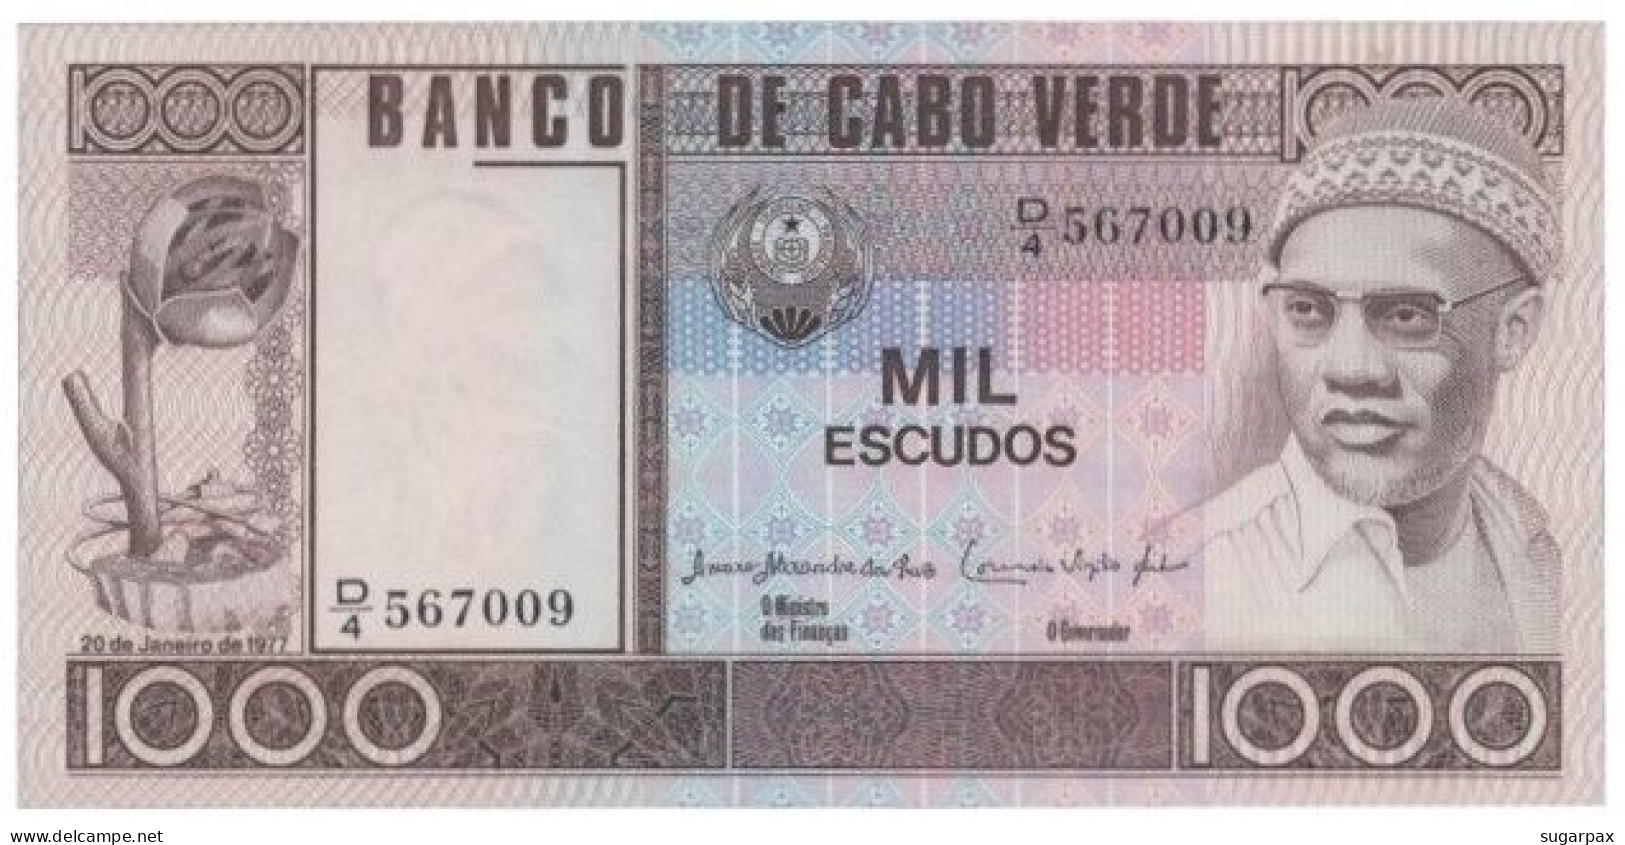 CAPE VERDE - 1000 ESCUDOS - 20.01.1977 - Pick 56.a - Unc. - Amilcar Cabral - 1 000 - Cape Verde